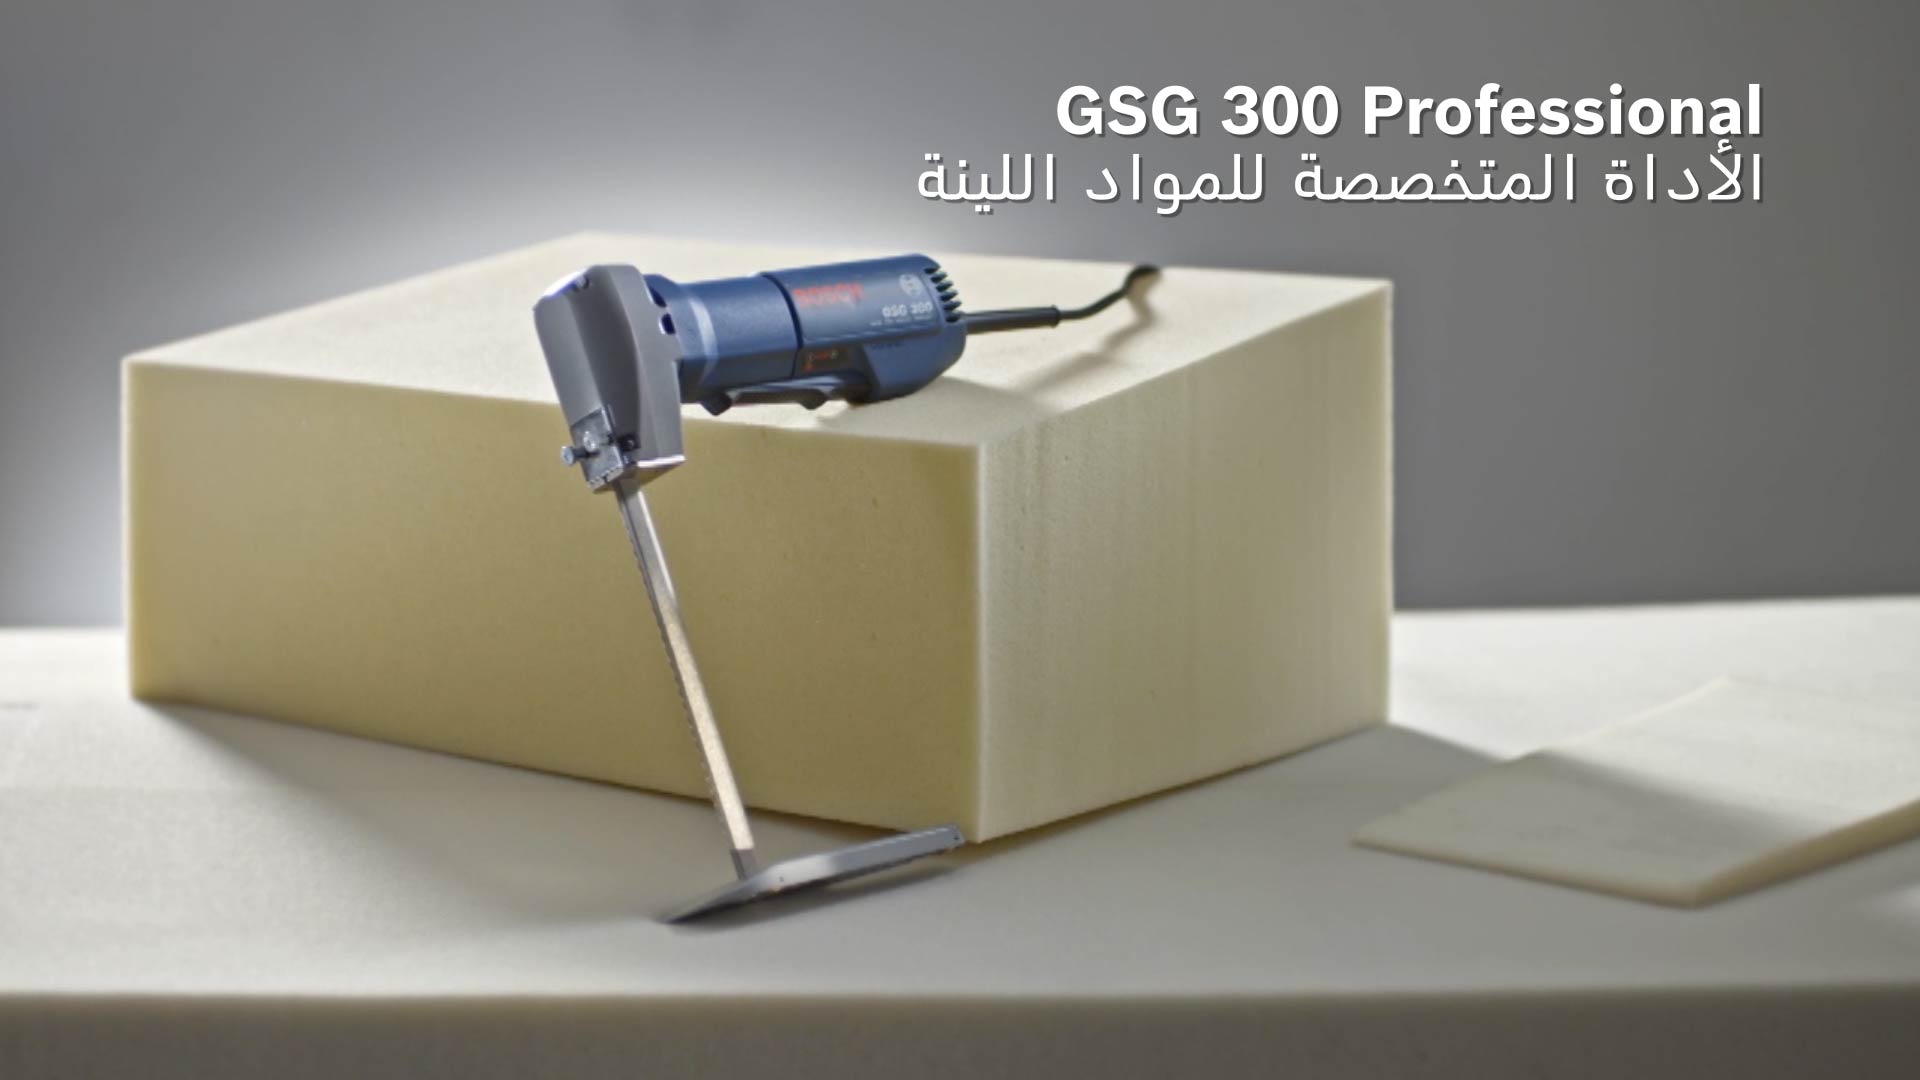 GSG 300